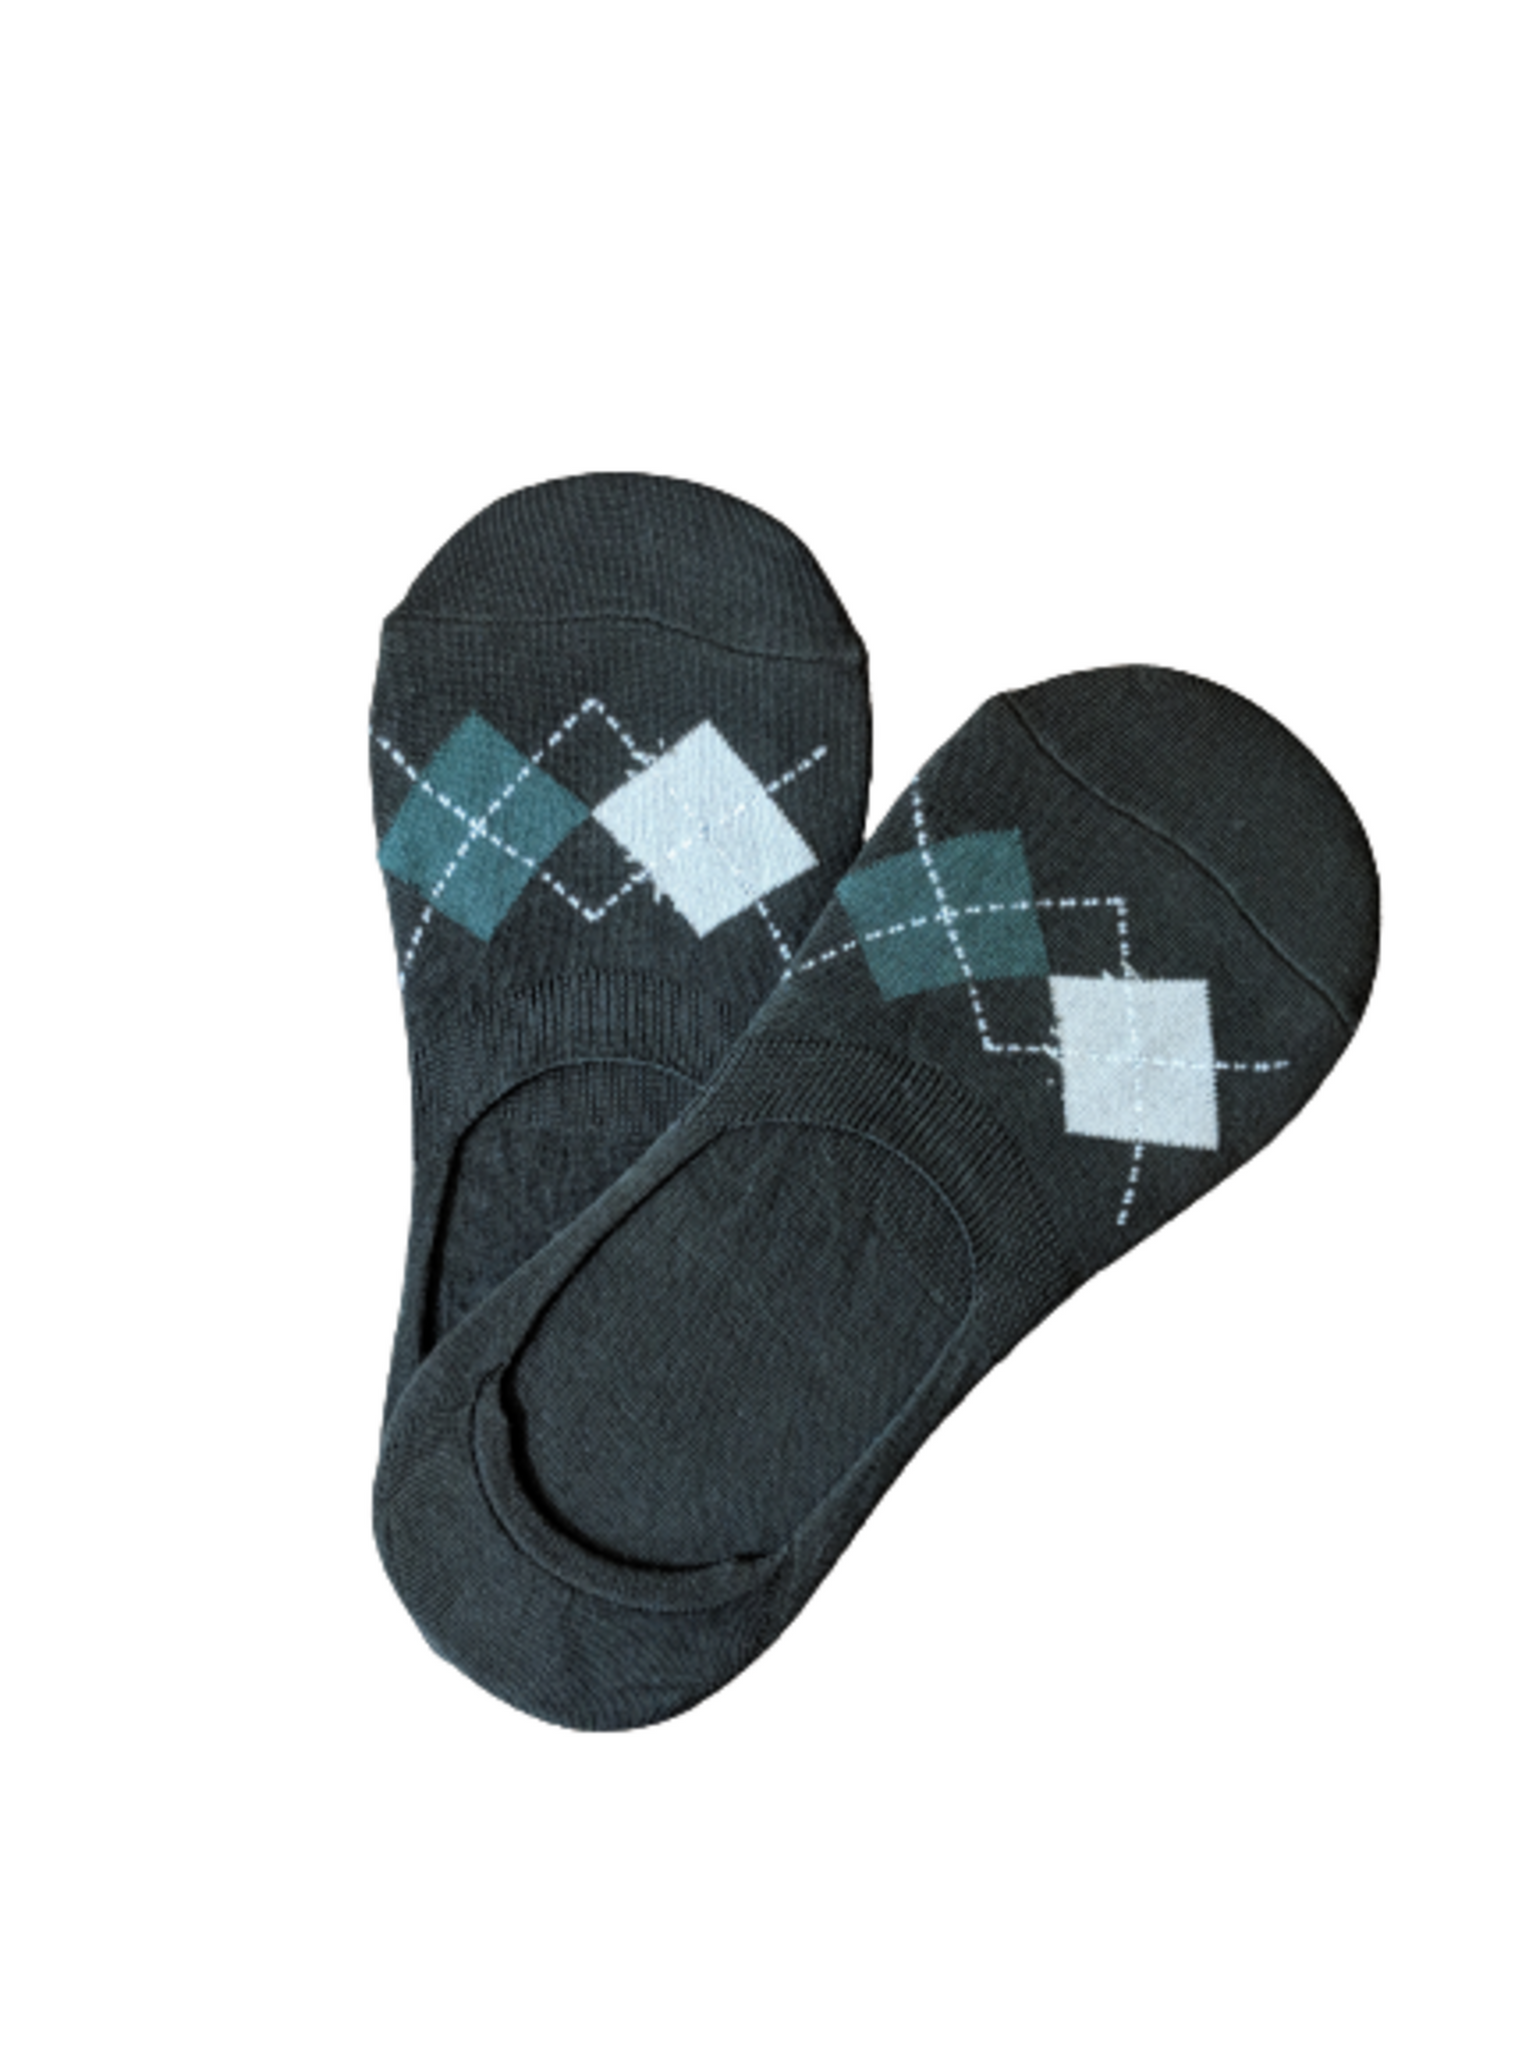 Formal Black Loafer Socks